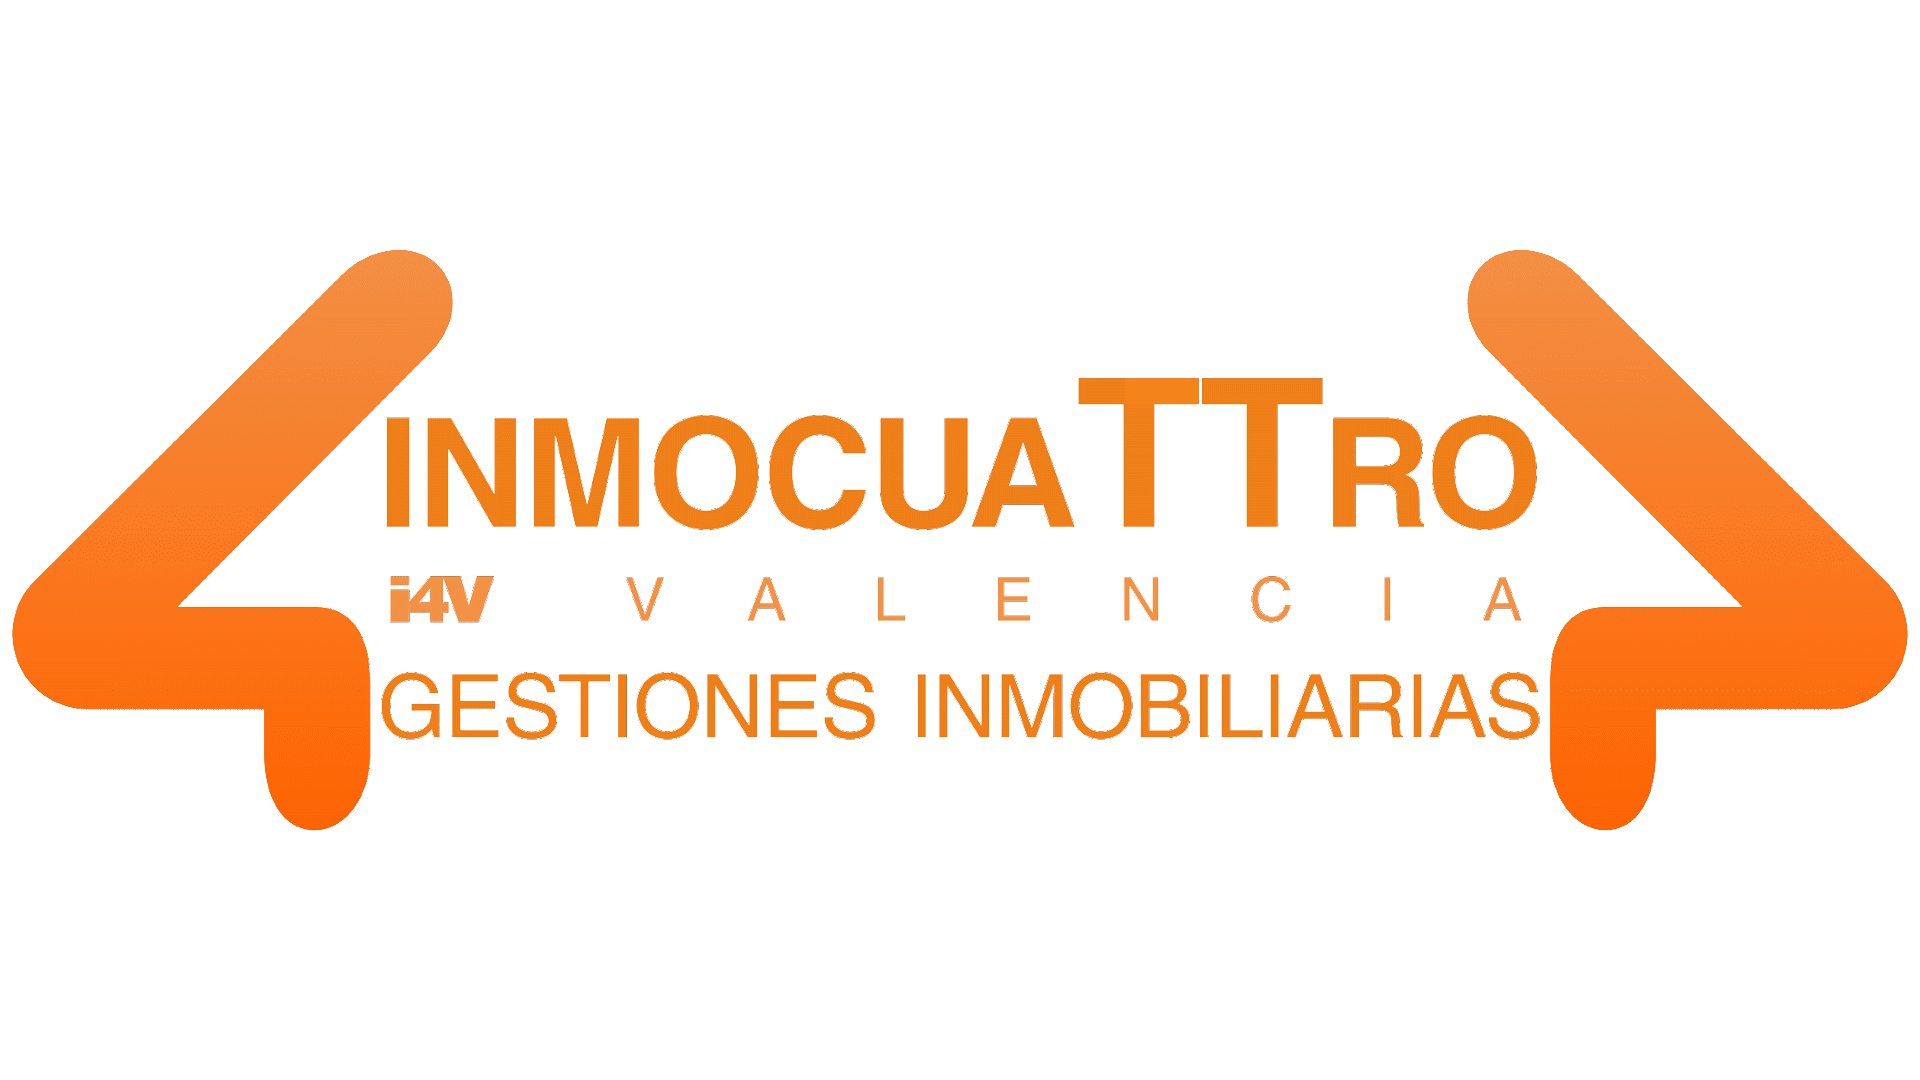 Logo  INMOCUATTRO  Valencia Gestiones Inmobiliaria